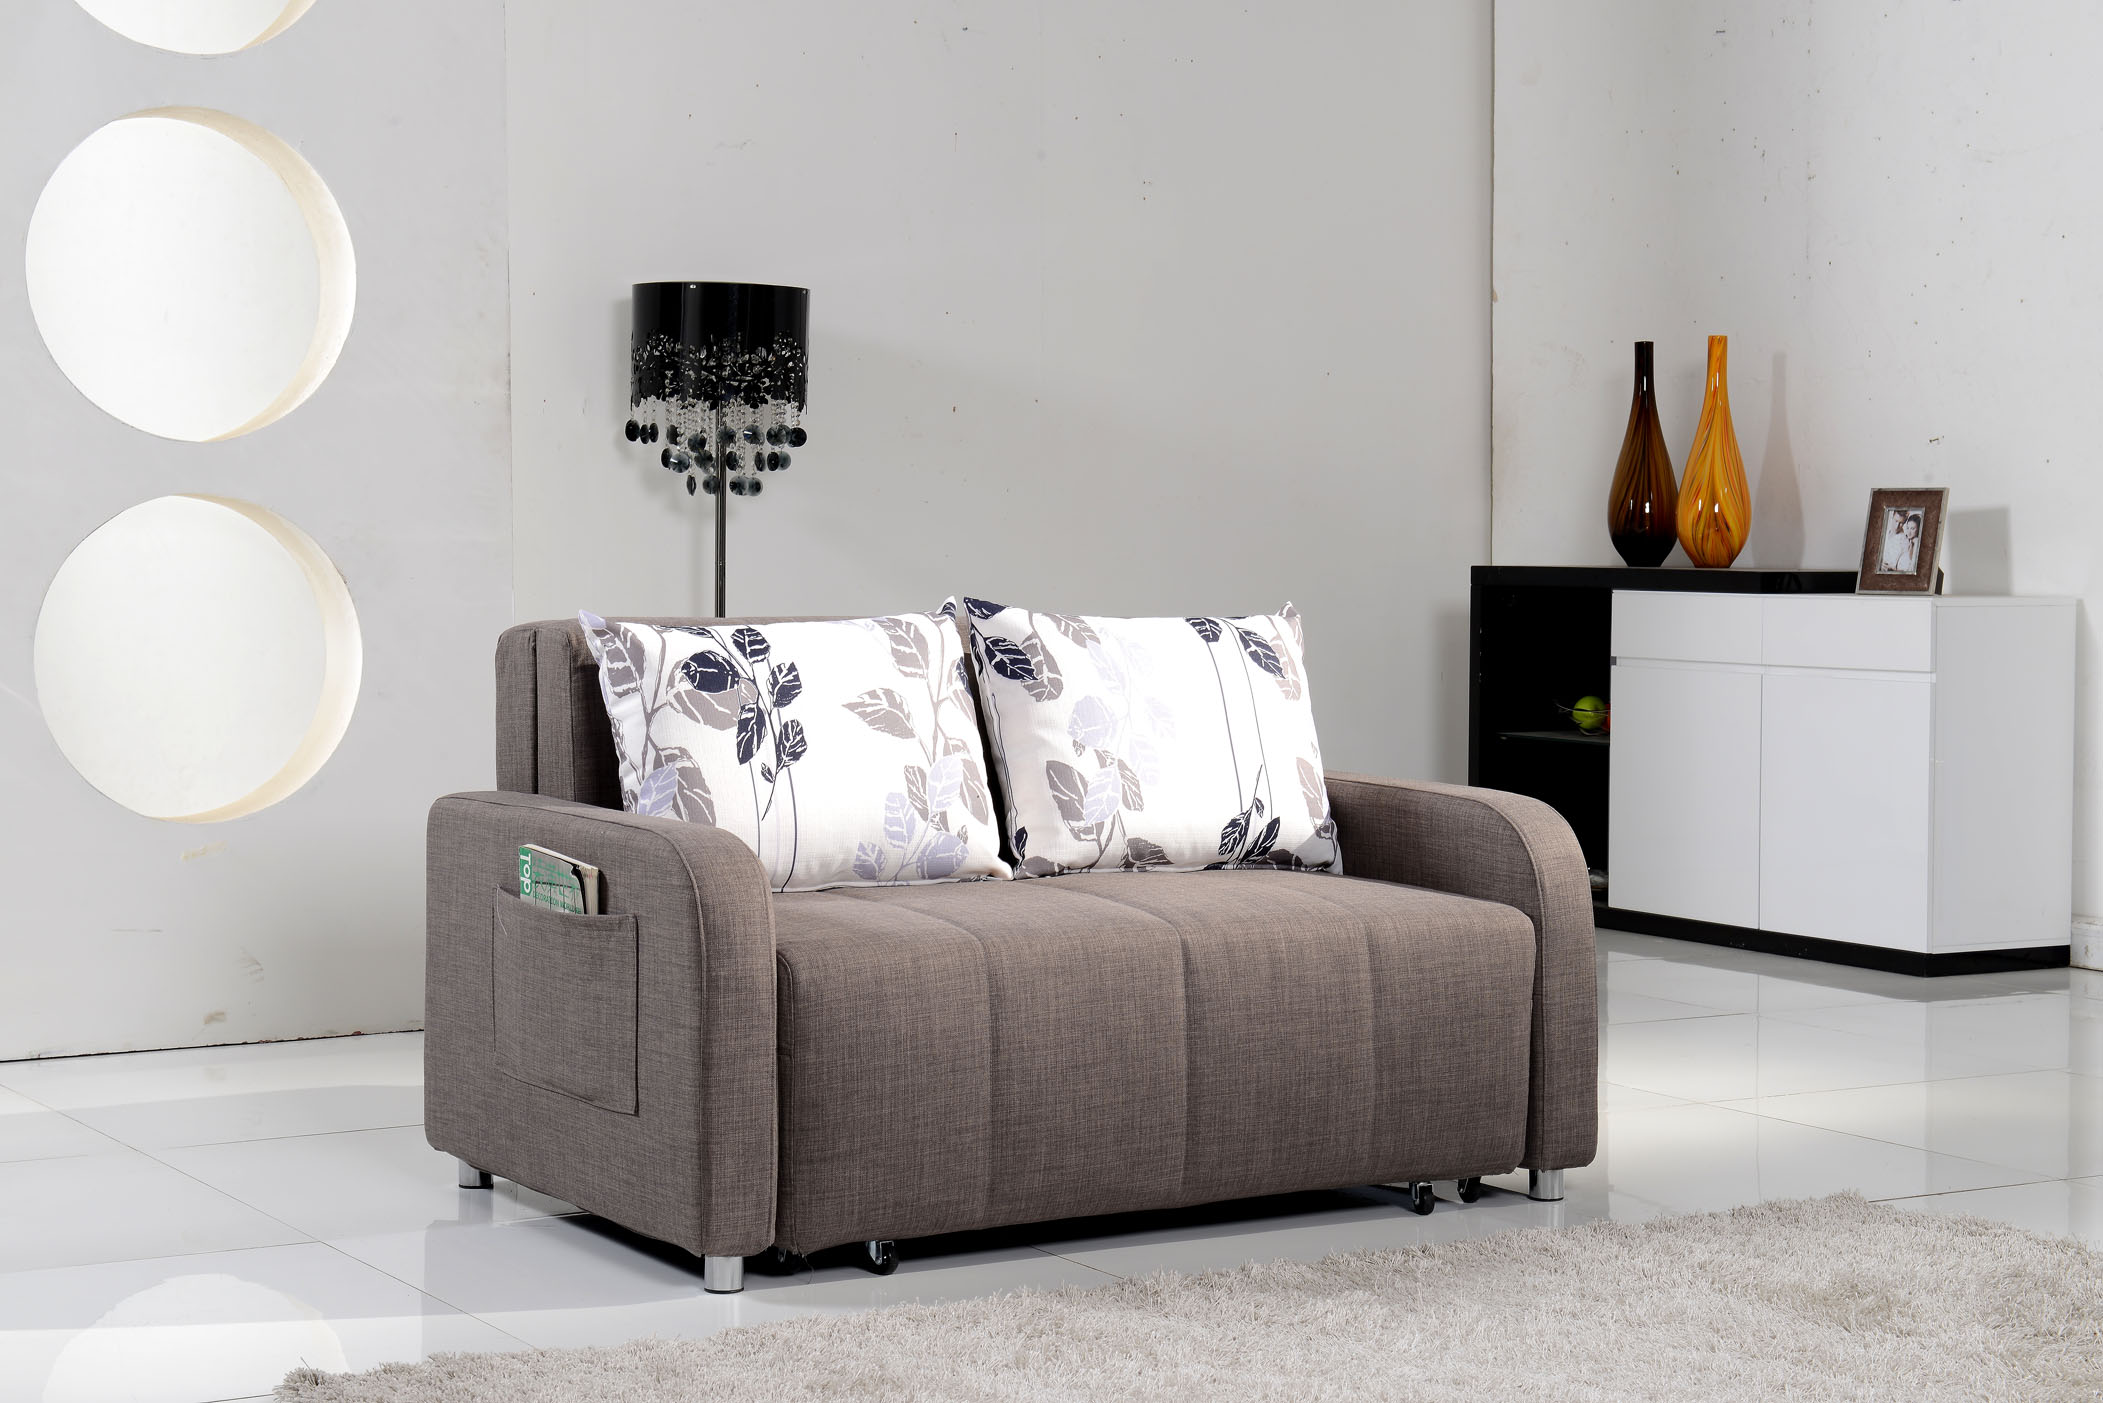 Компактный диван кровать - идеальная мягкая мебель для маленькой комнаты